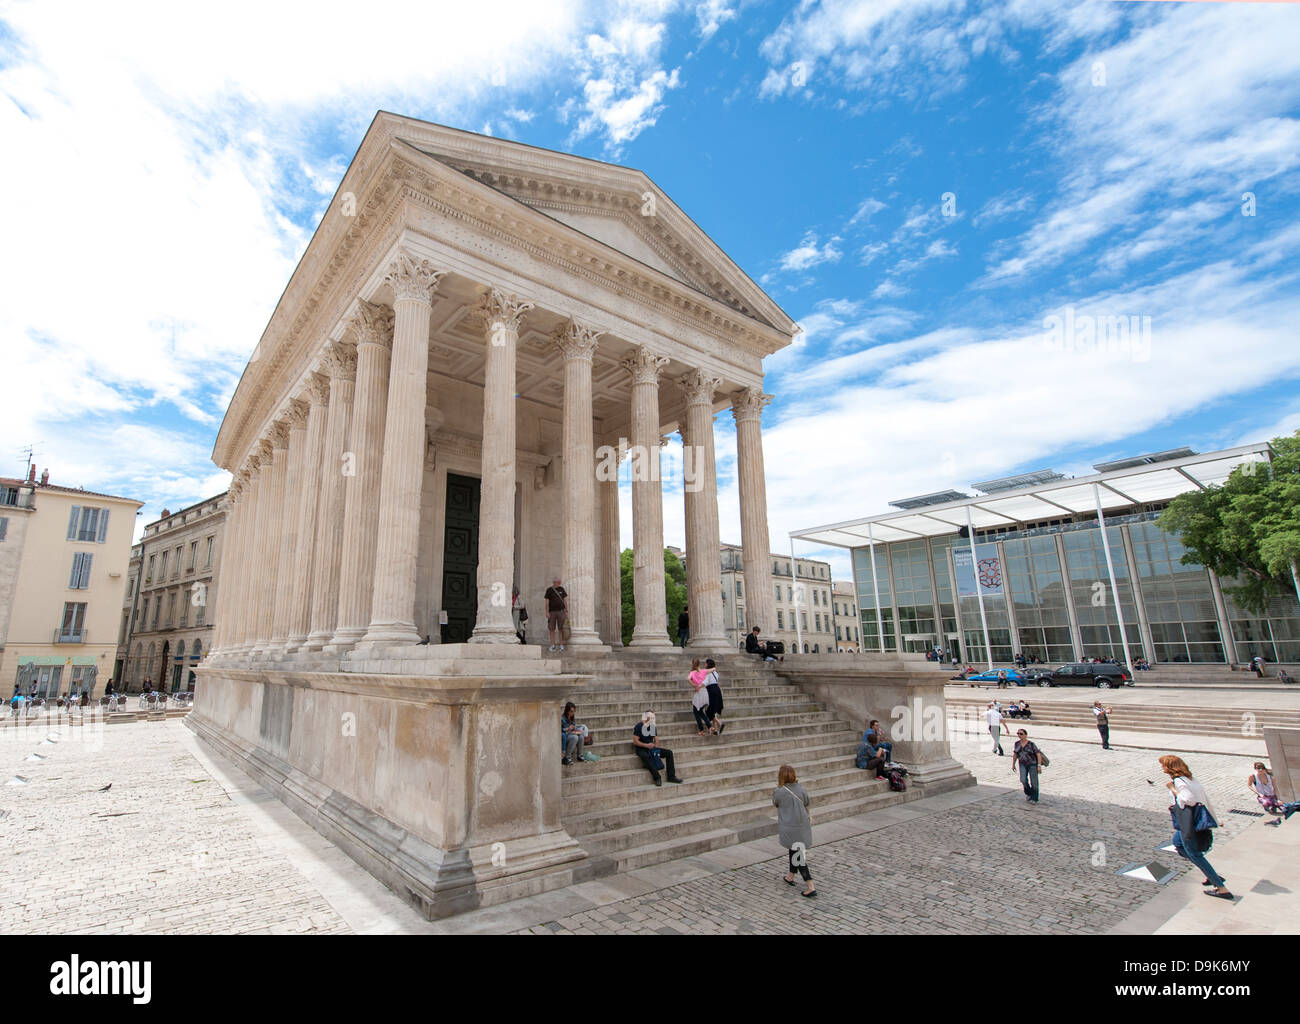 Maison Carrée, temple romain antique, et sa contrepartie moderne par Lord Foster de Nîmes, Gard, Languedoc-Roussillon, France Banque D'Images